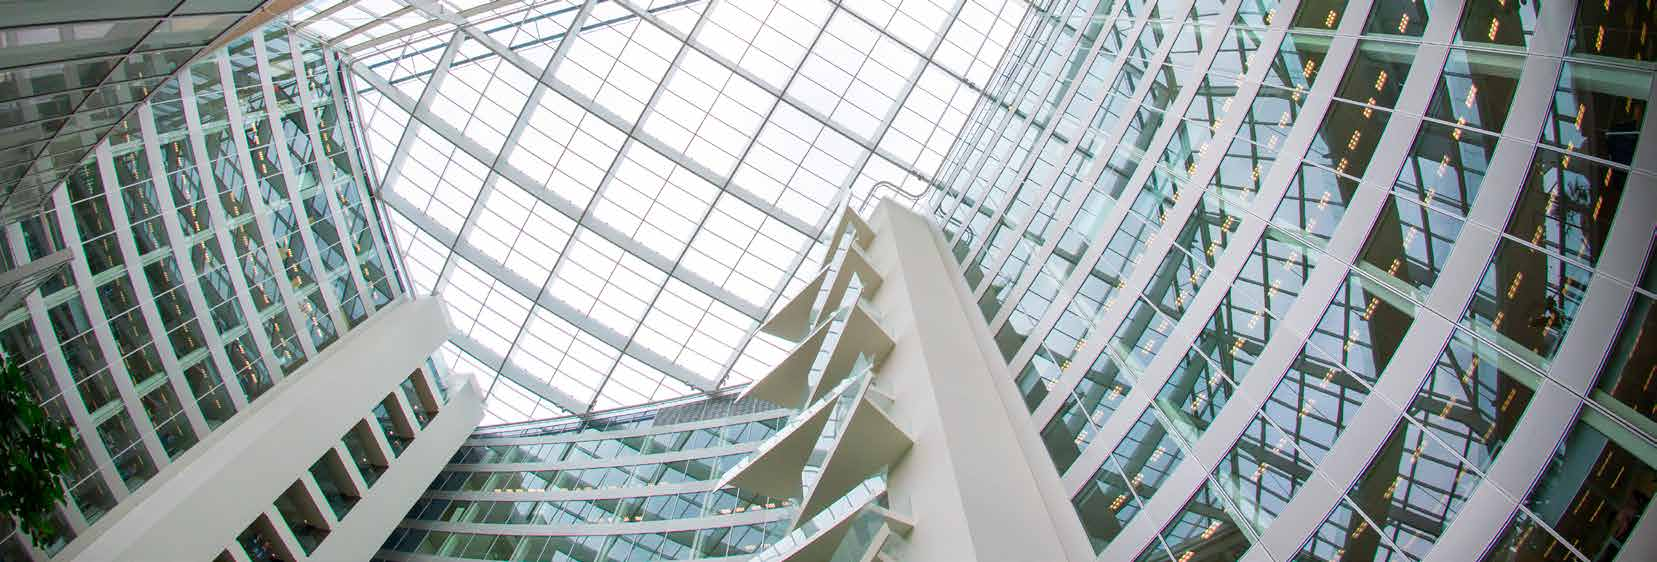 Estudo de caso Iluminação no auge da inovação No distrito comercial Zuidas de Amesterdão, o edifício s mais sustentável do mundo lidera na inovação dos edifícios ecológicos com um design futurista